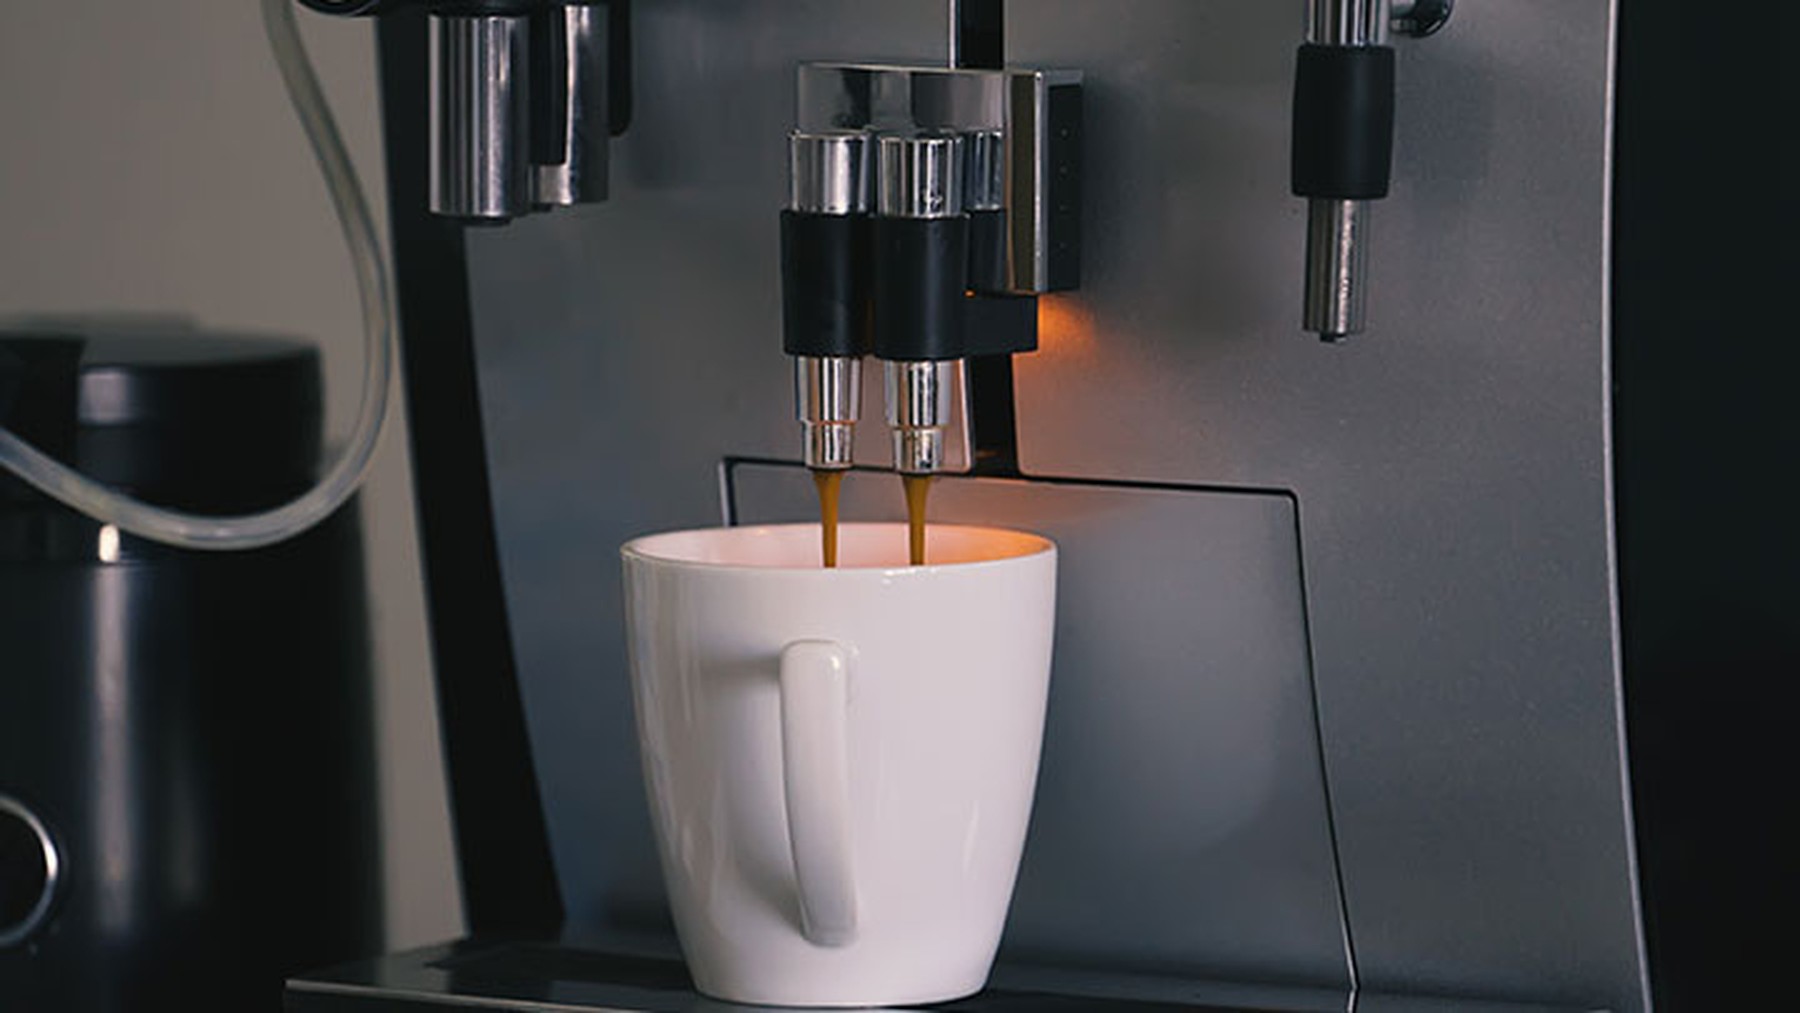 Cafetera automática echando café en una taza blanca